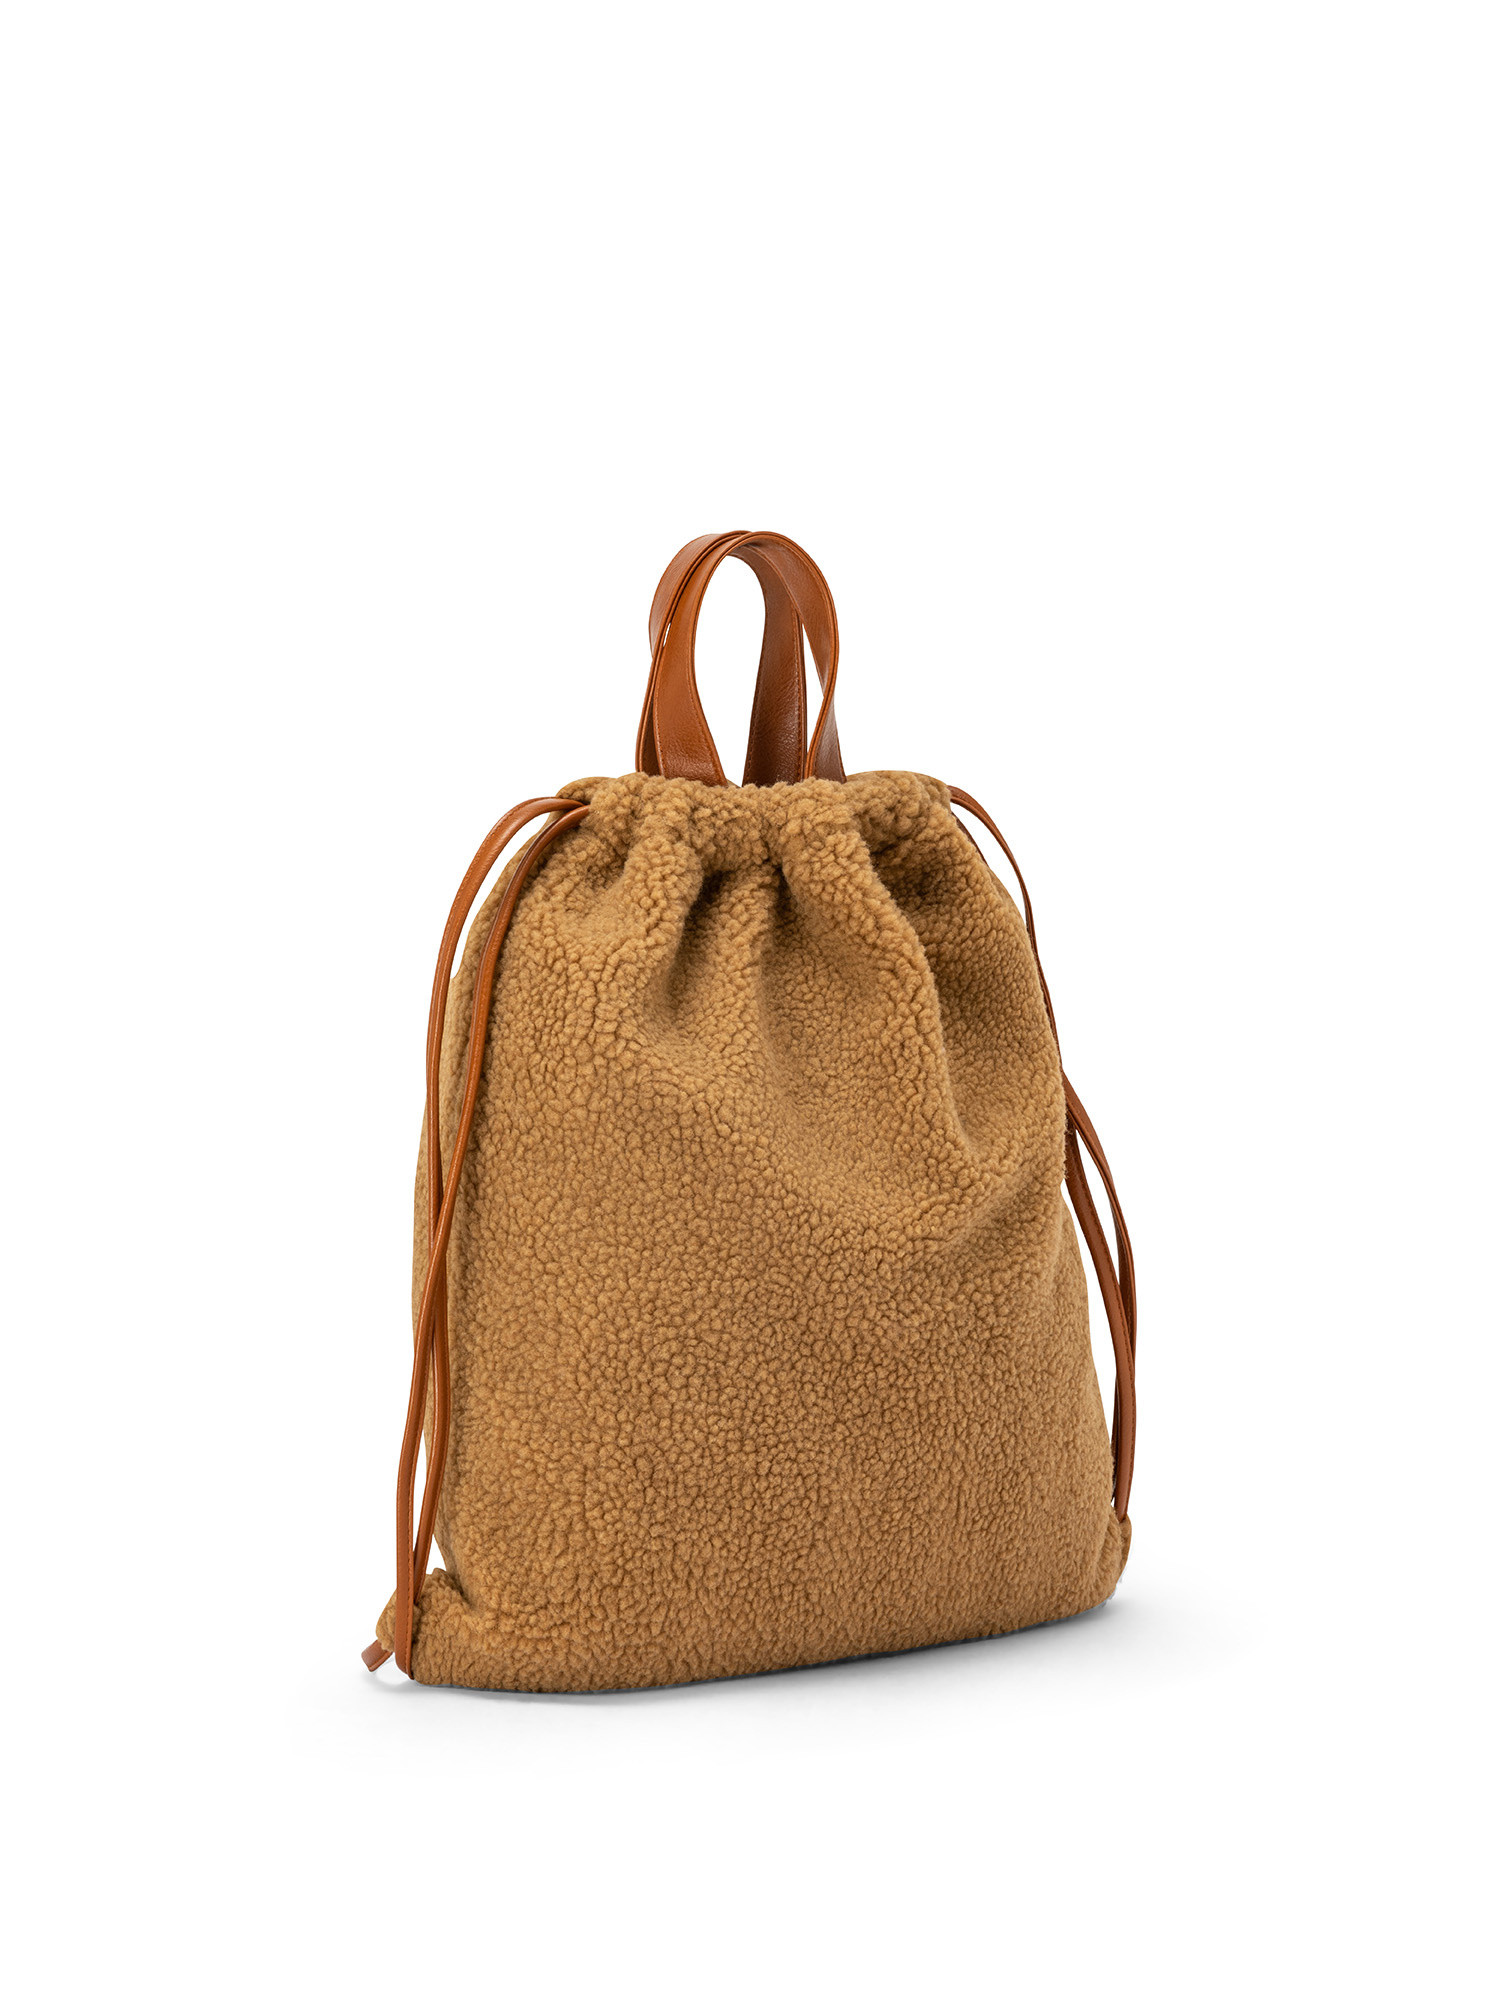 Koan - Faux fur backpack, Hazelnut Brown, large image number 1